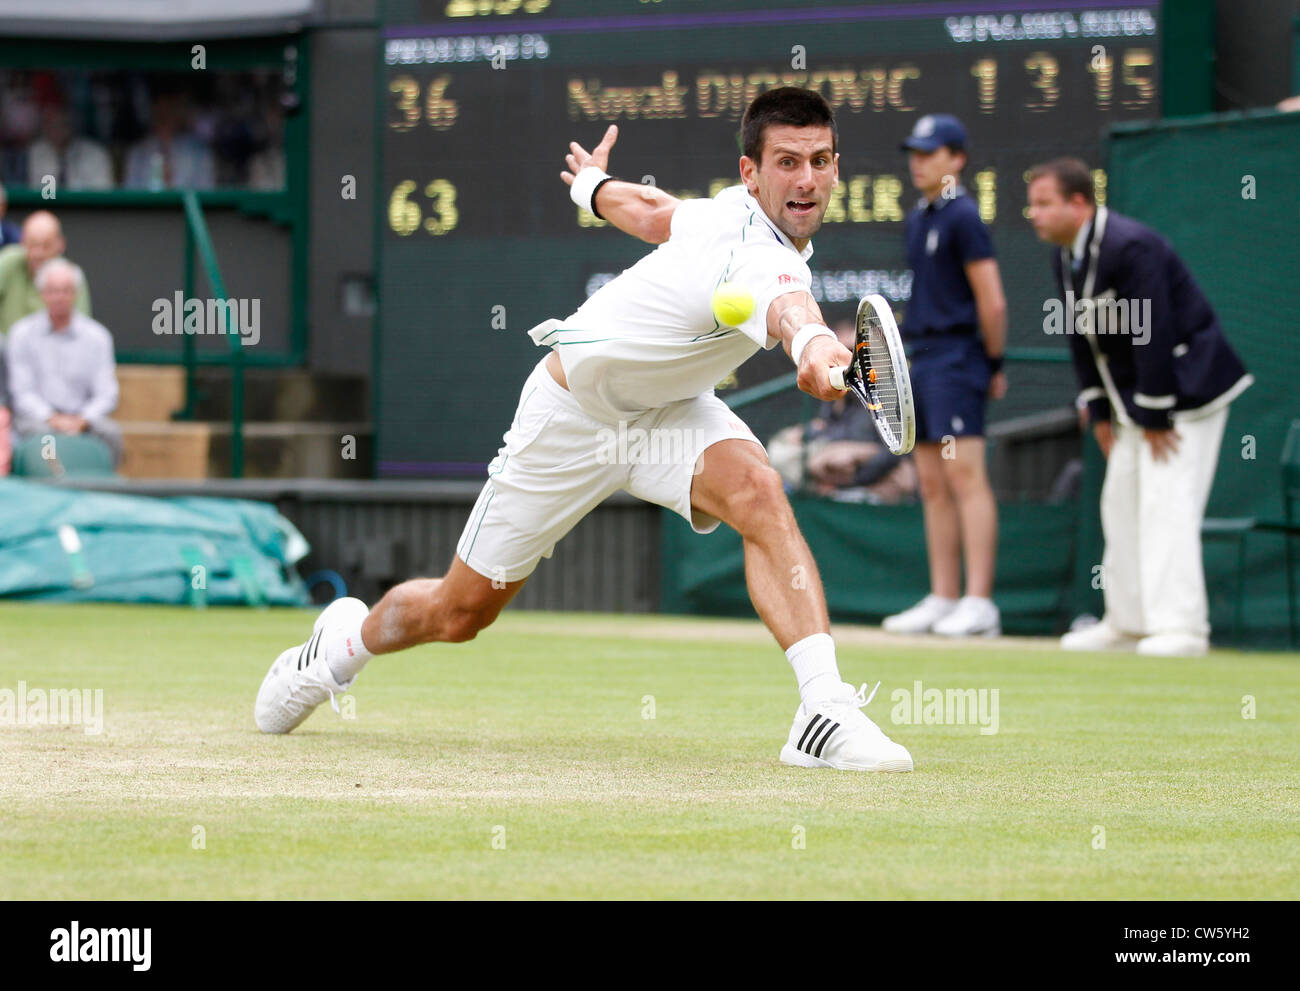 Novak Djokovic (SRB) in action at Wimbledon Stock Photo